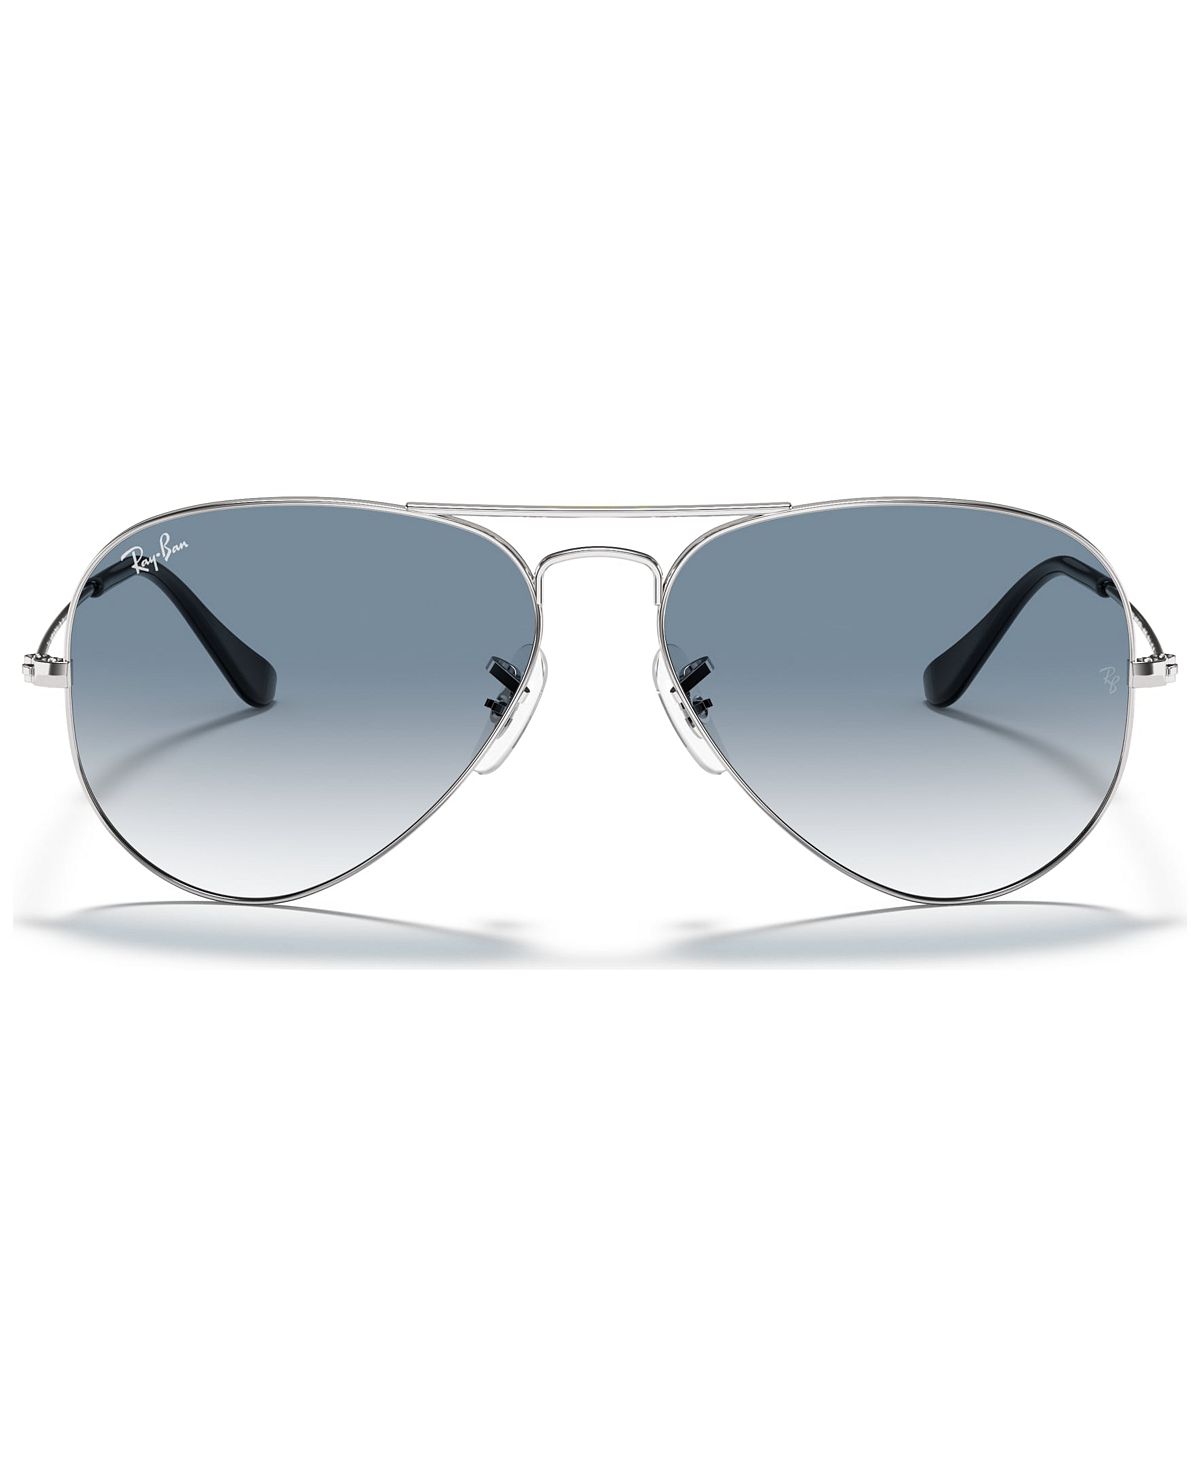 ray ban серый черный Солнцезащитные очки, rb3025 aviator gradient Ray-Ban, мульти